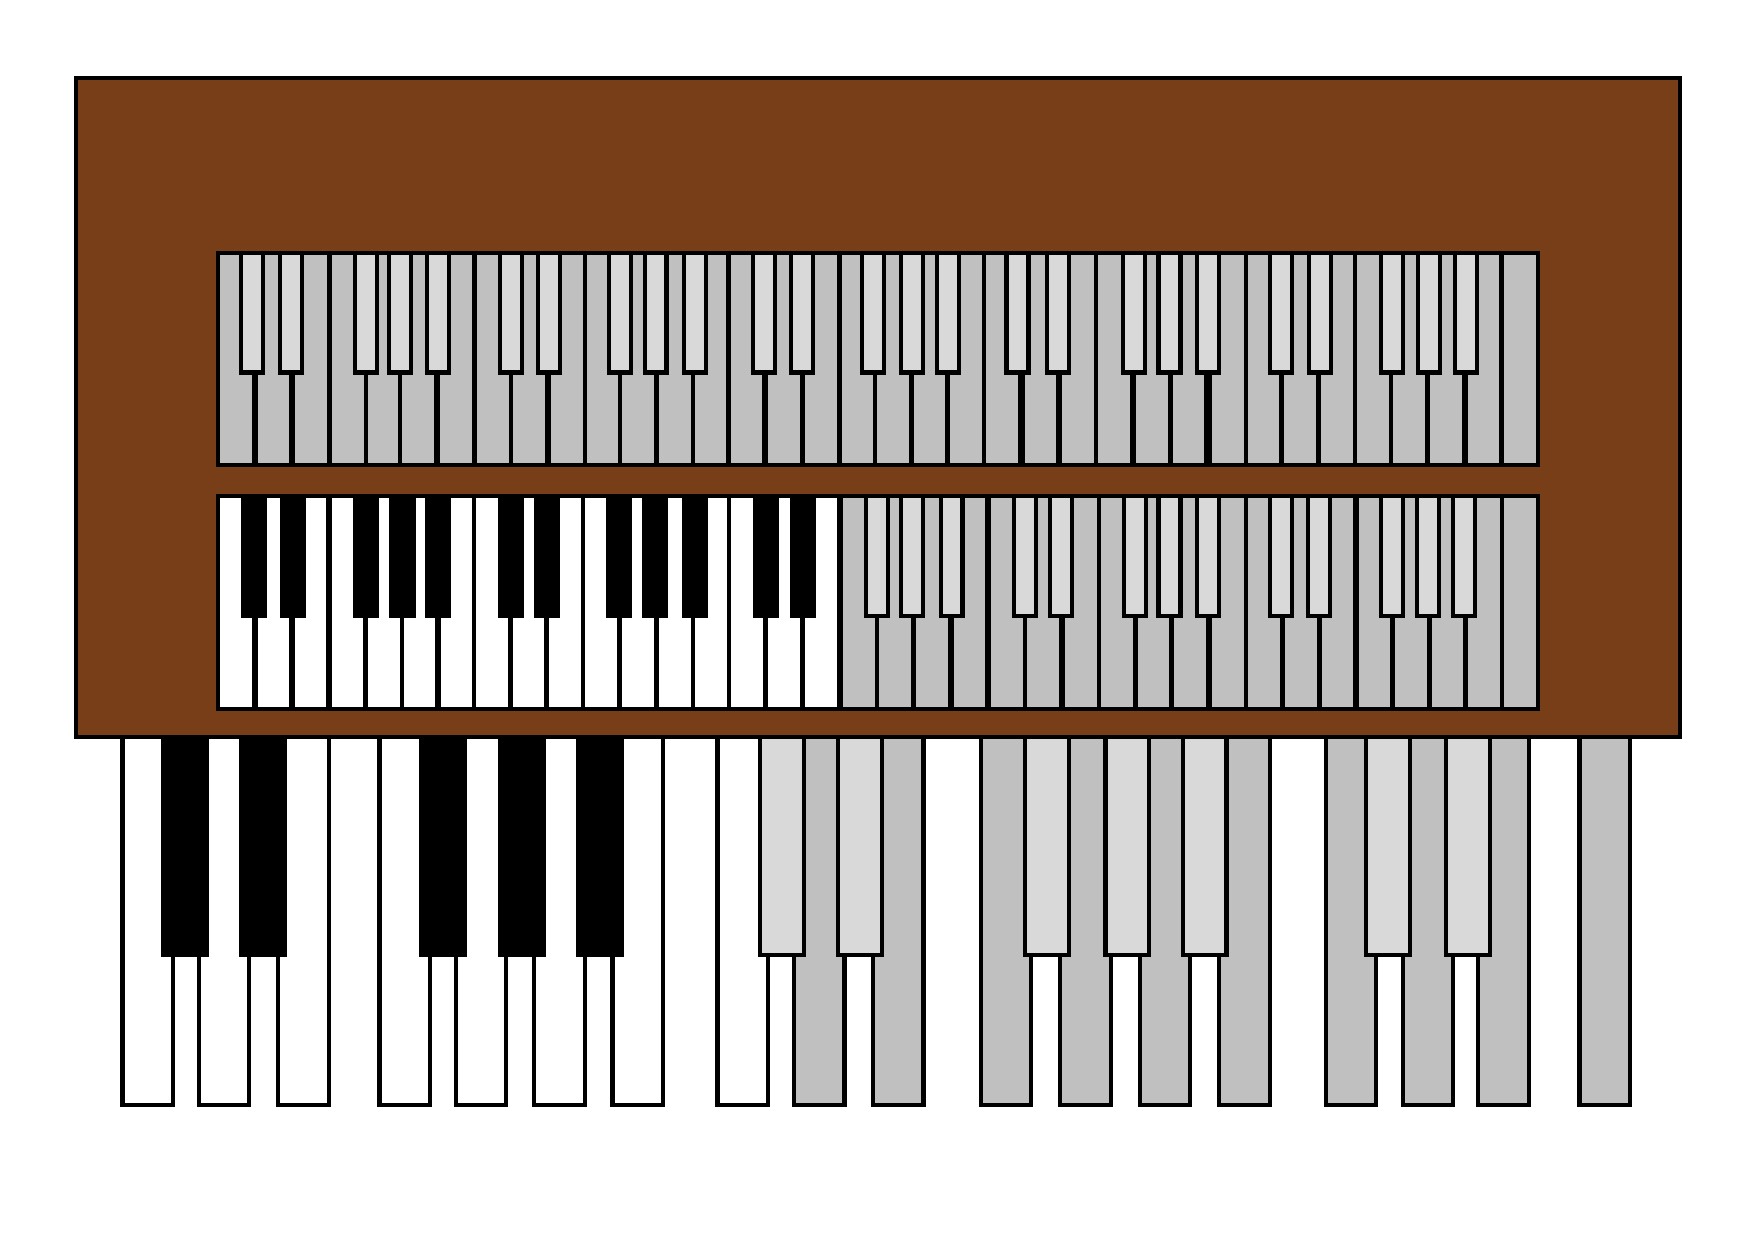 Orgel med tangenter och pedaler delvis grå och delvis i rätt färg.